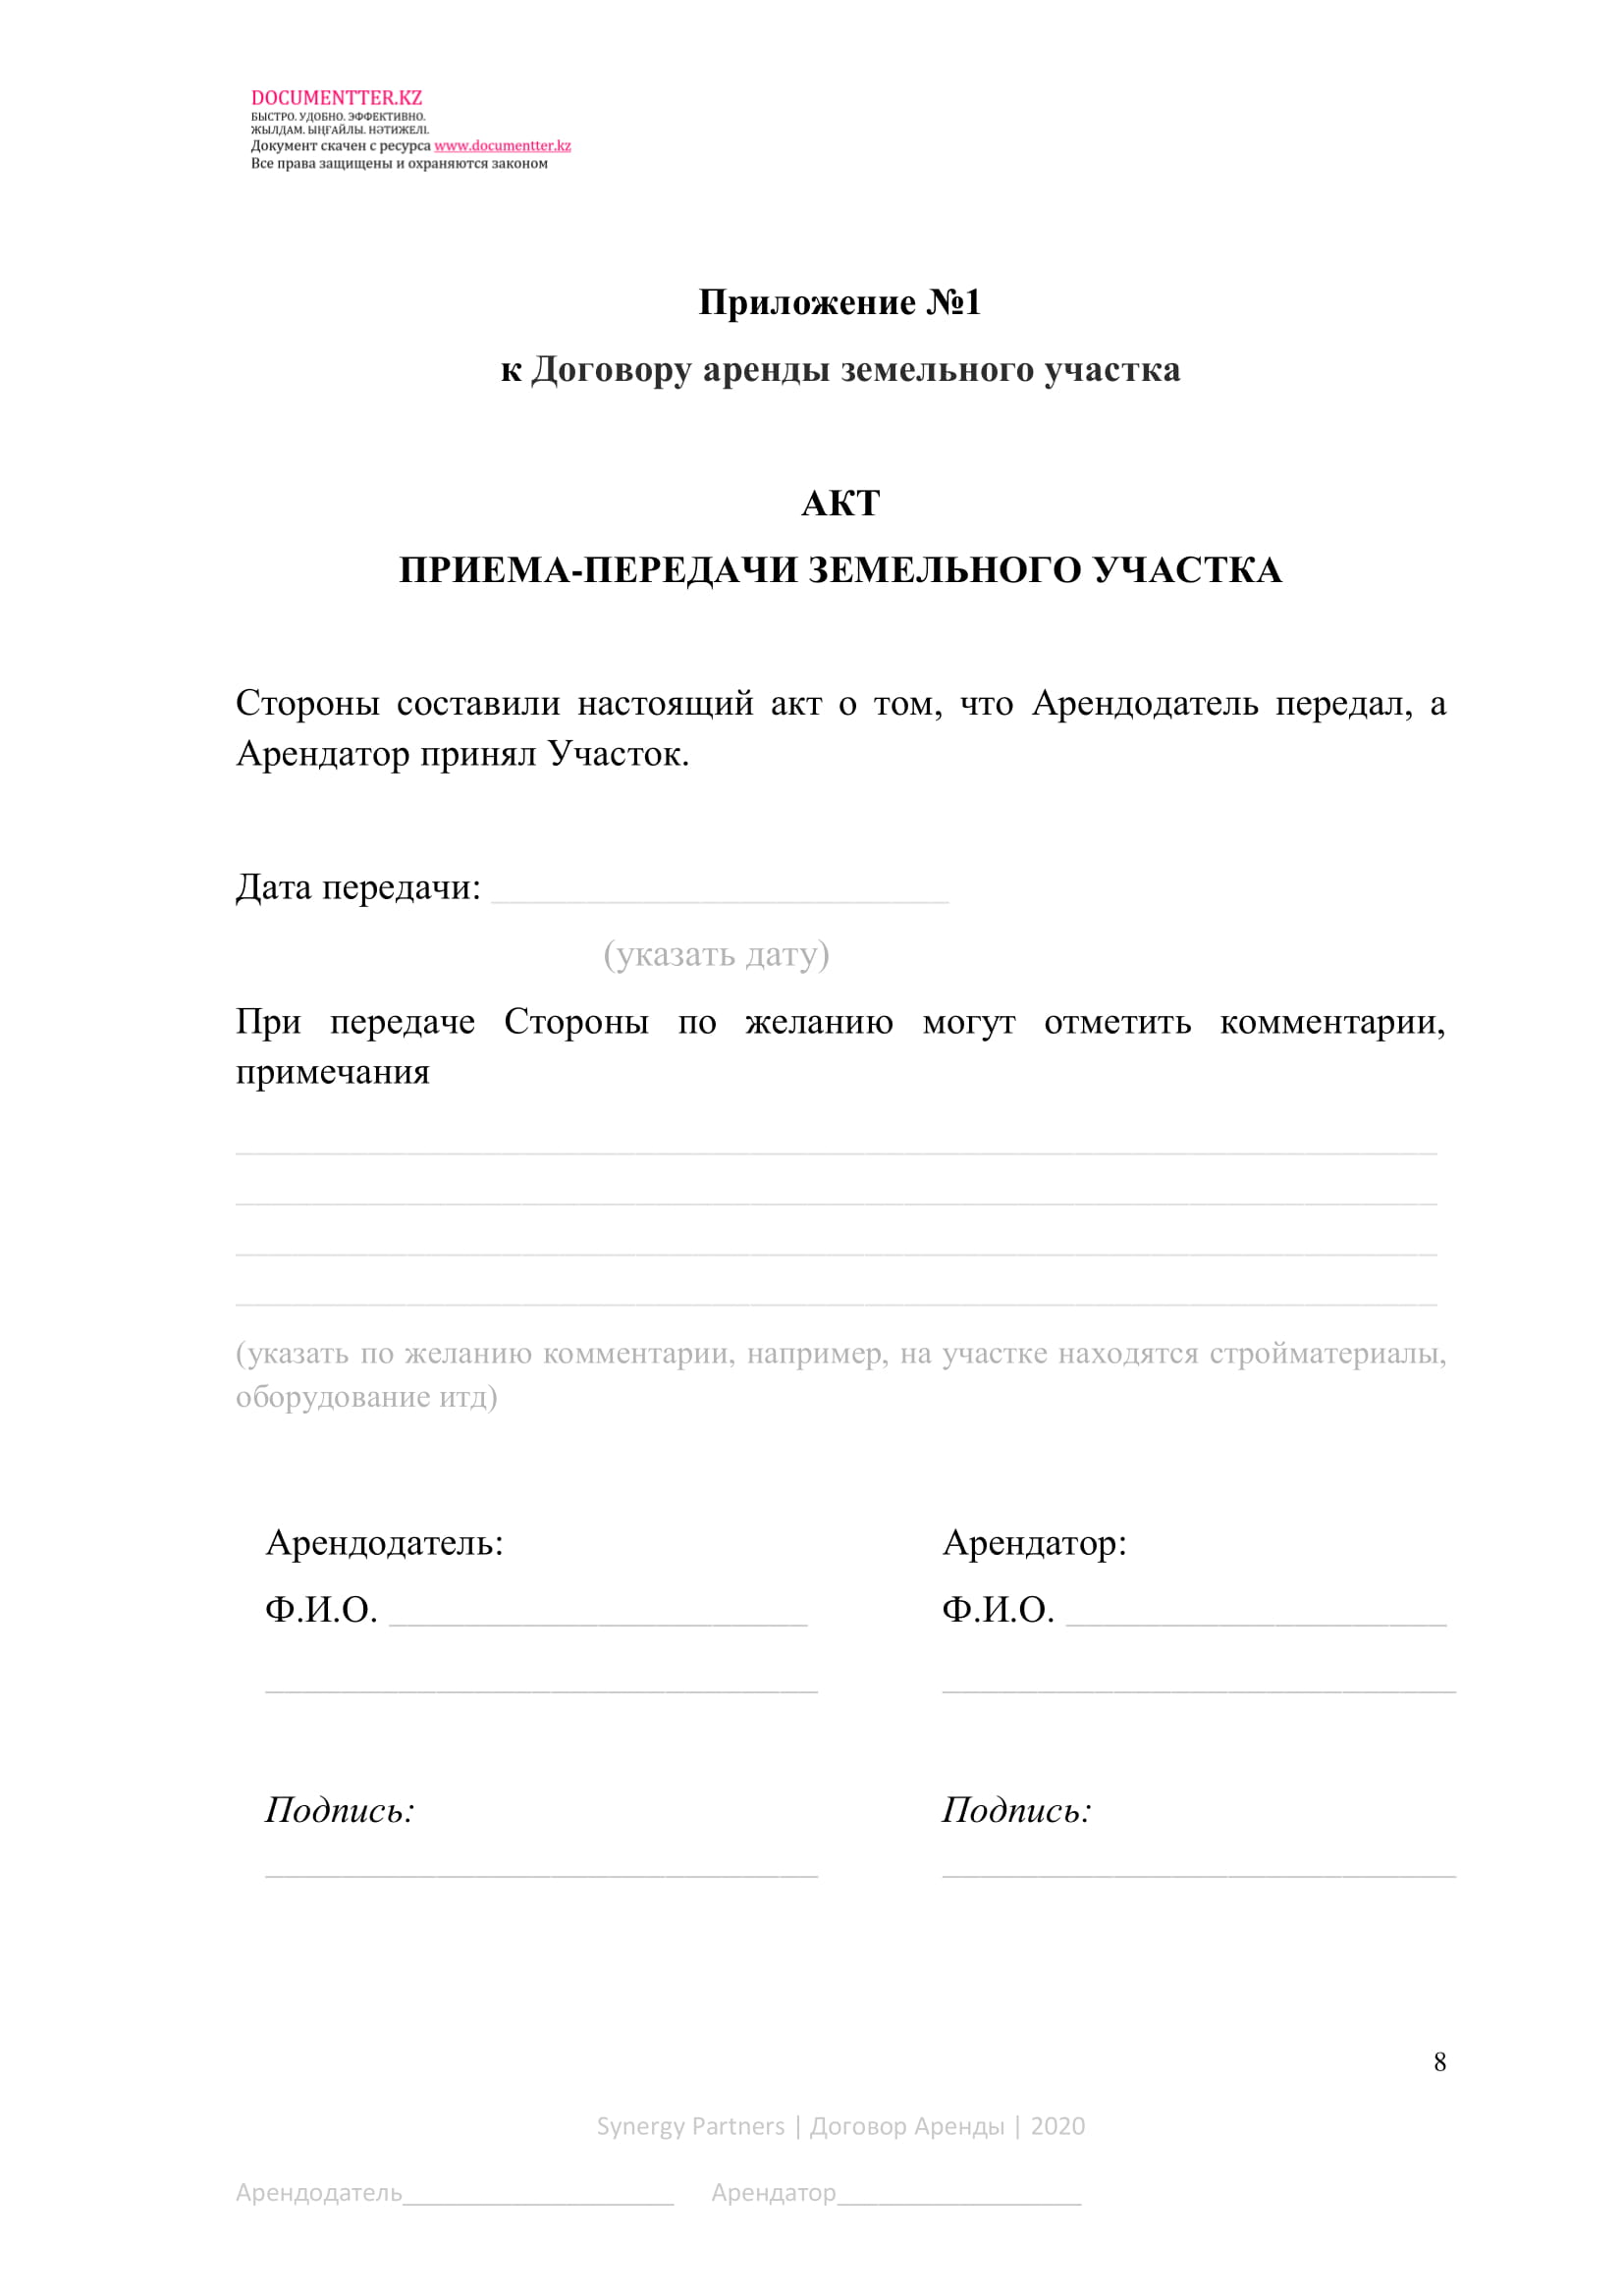 Договор аренды земельного участка | documentterkz.com в Казахстане